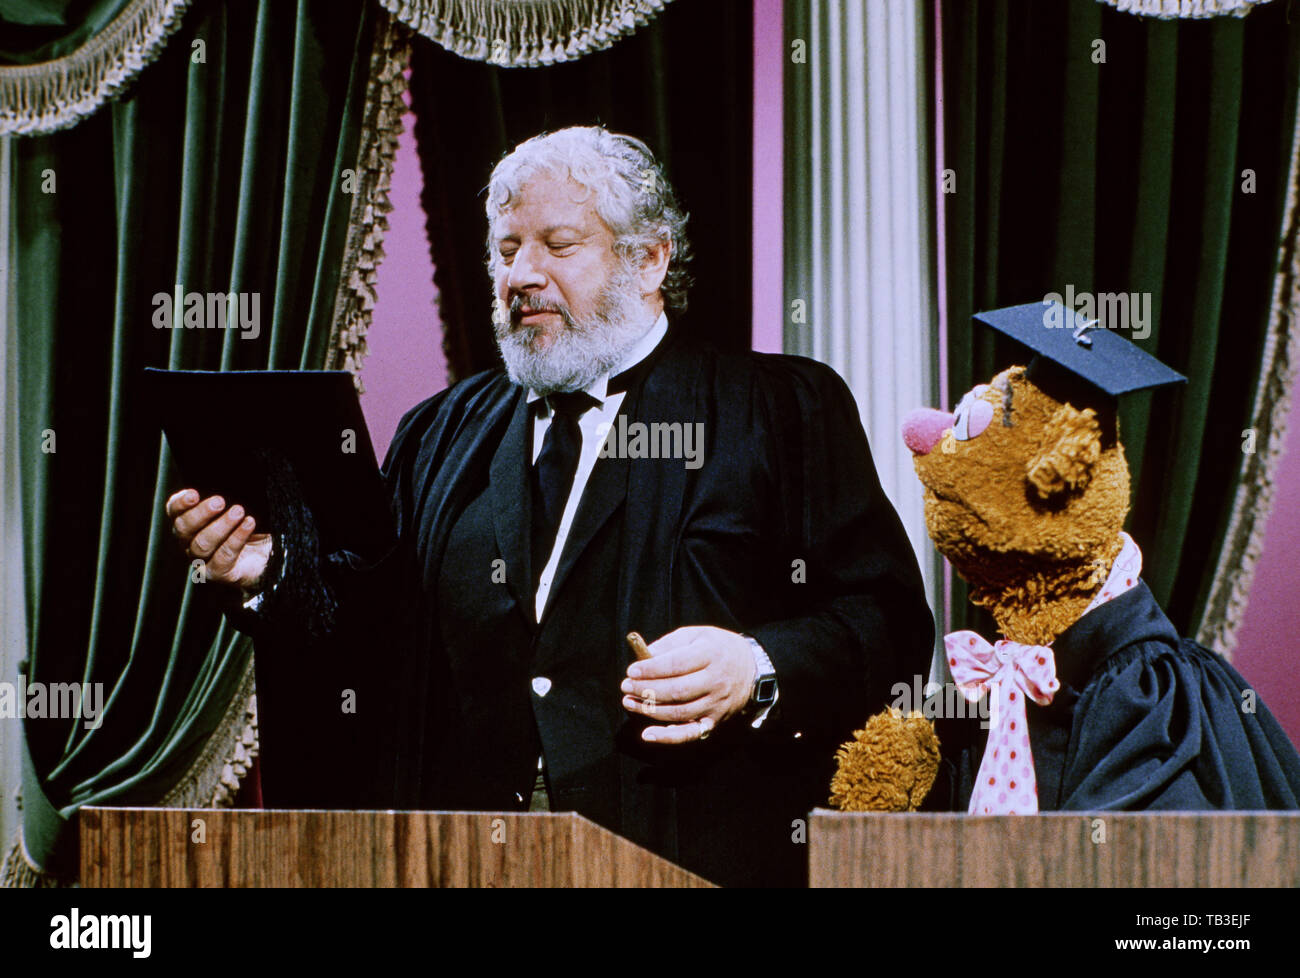 El Muppet Show, Großbritannien Fernsehserie, EE.UU./1976 - 1981, mit Comedyshow Puppen und Gaststar Peter Ustinov Foto de stock